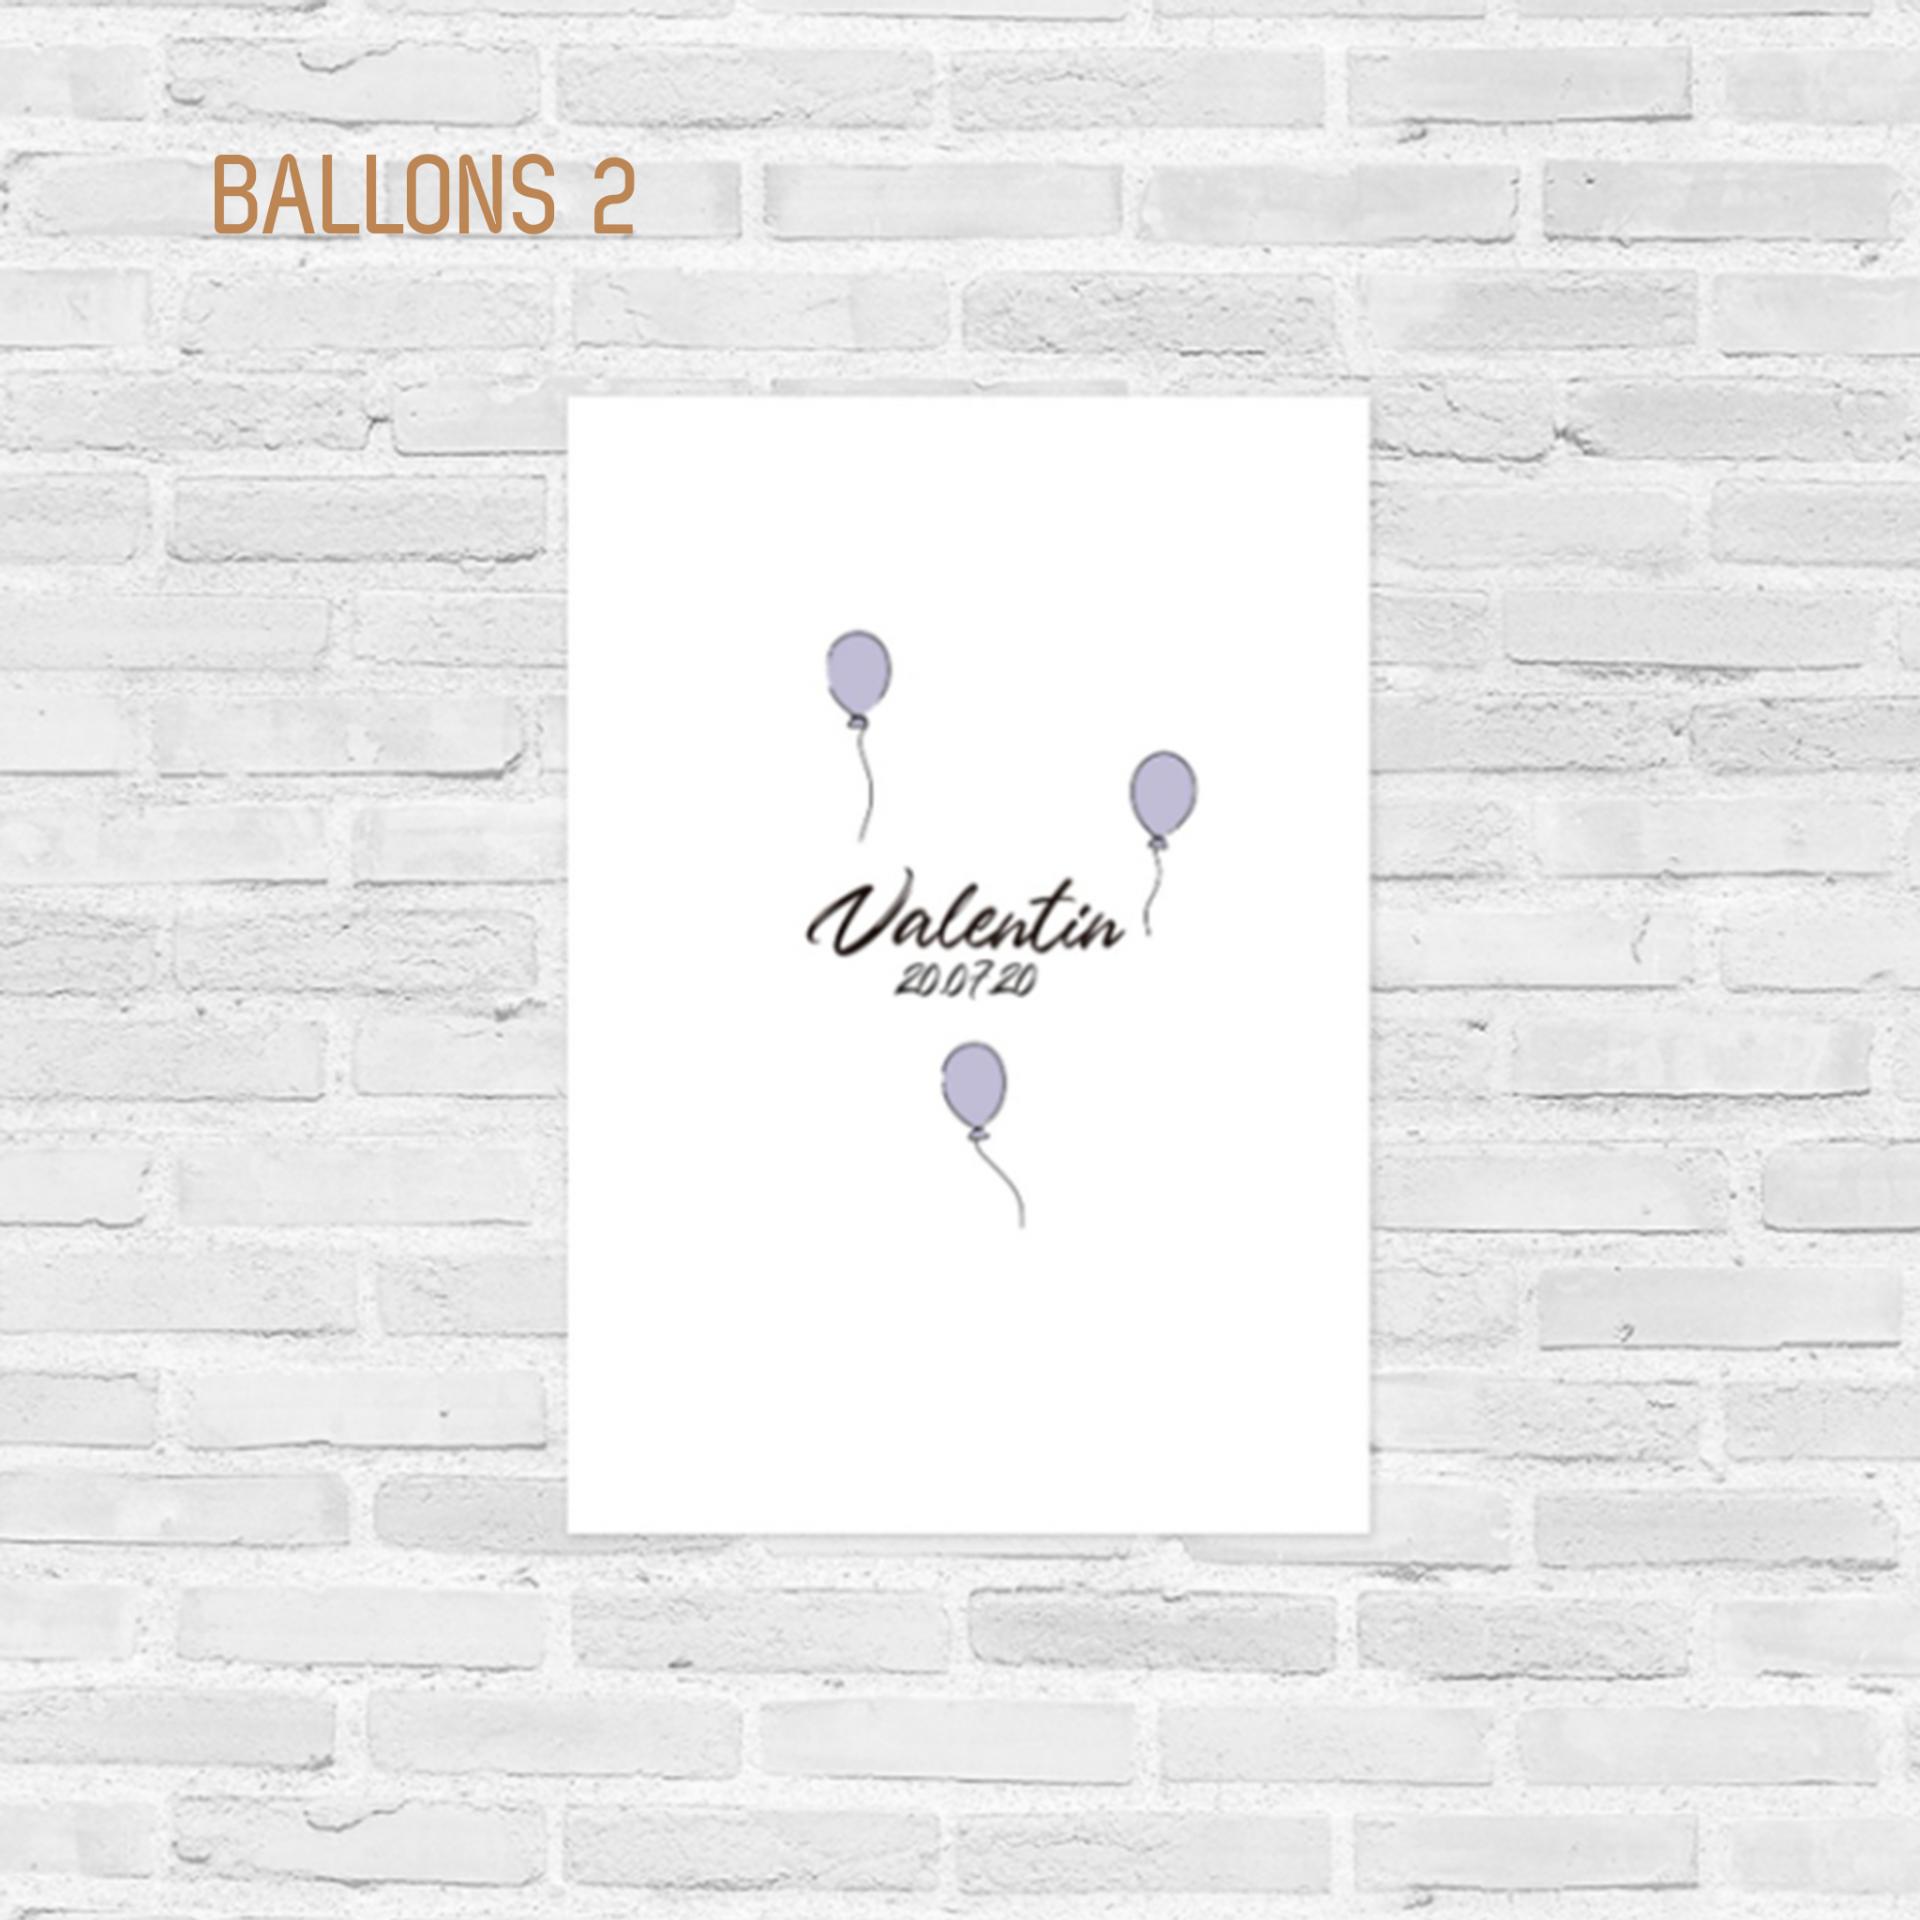 Affiche couleur de naissance Ballons 2 - Atelier Bombus